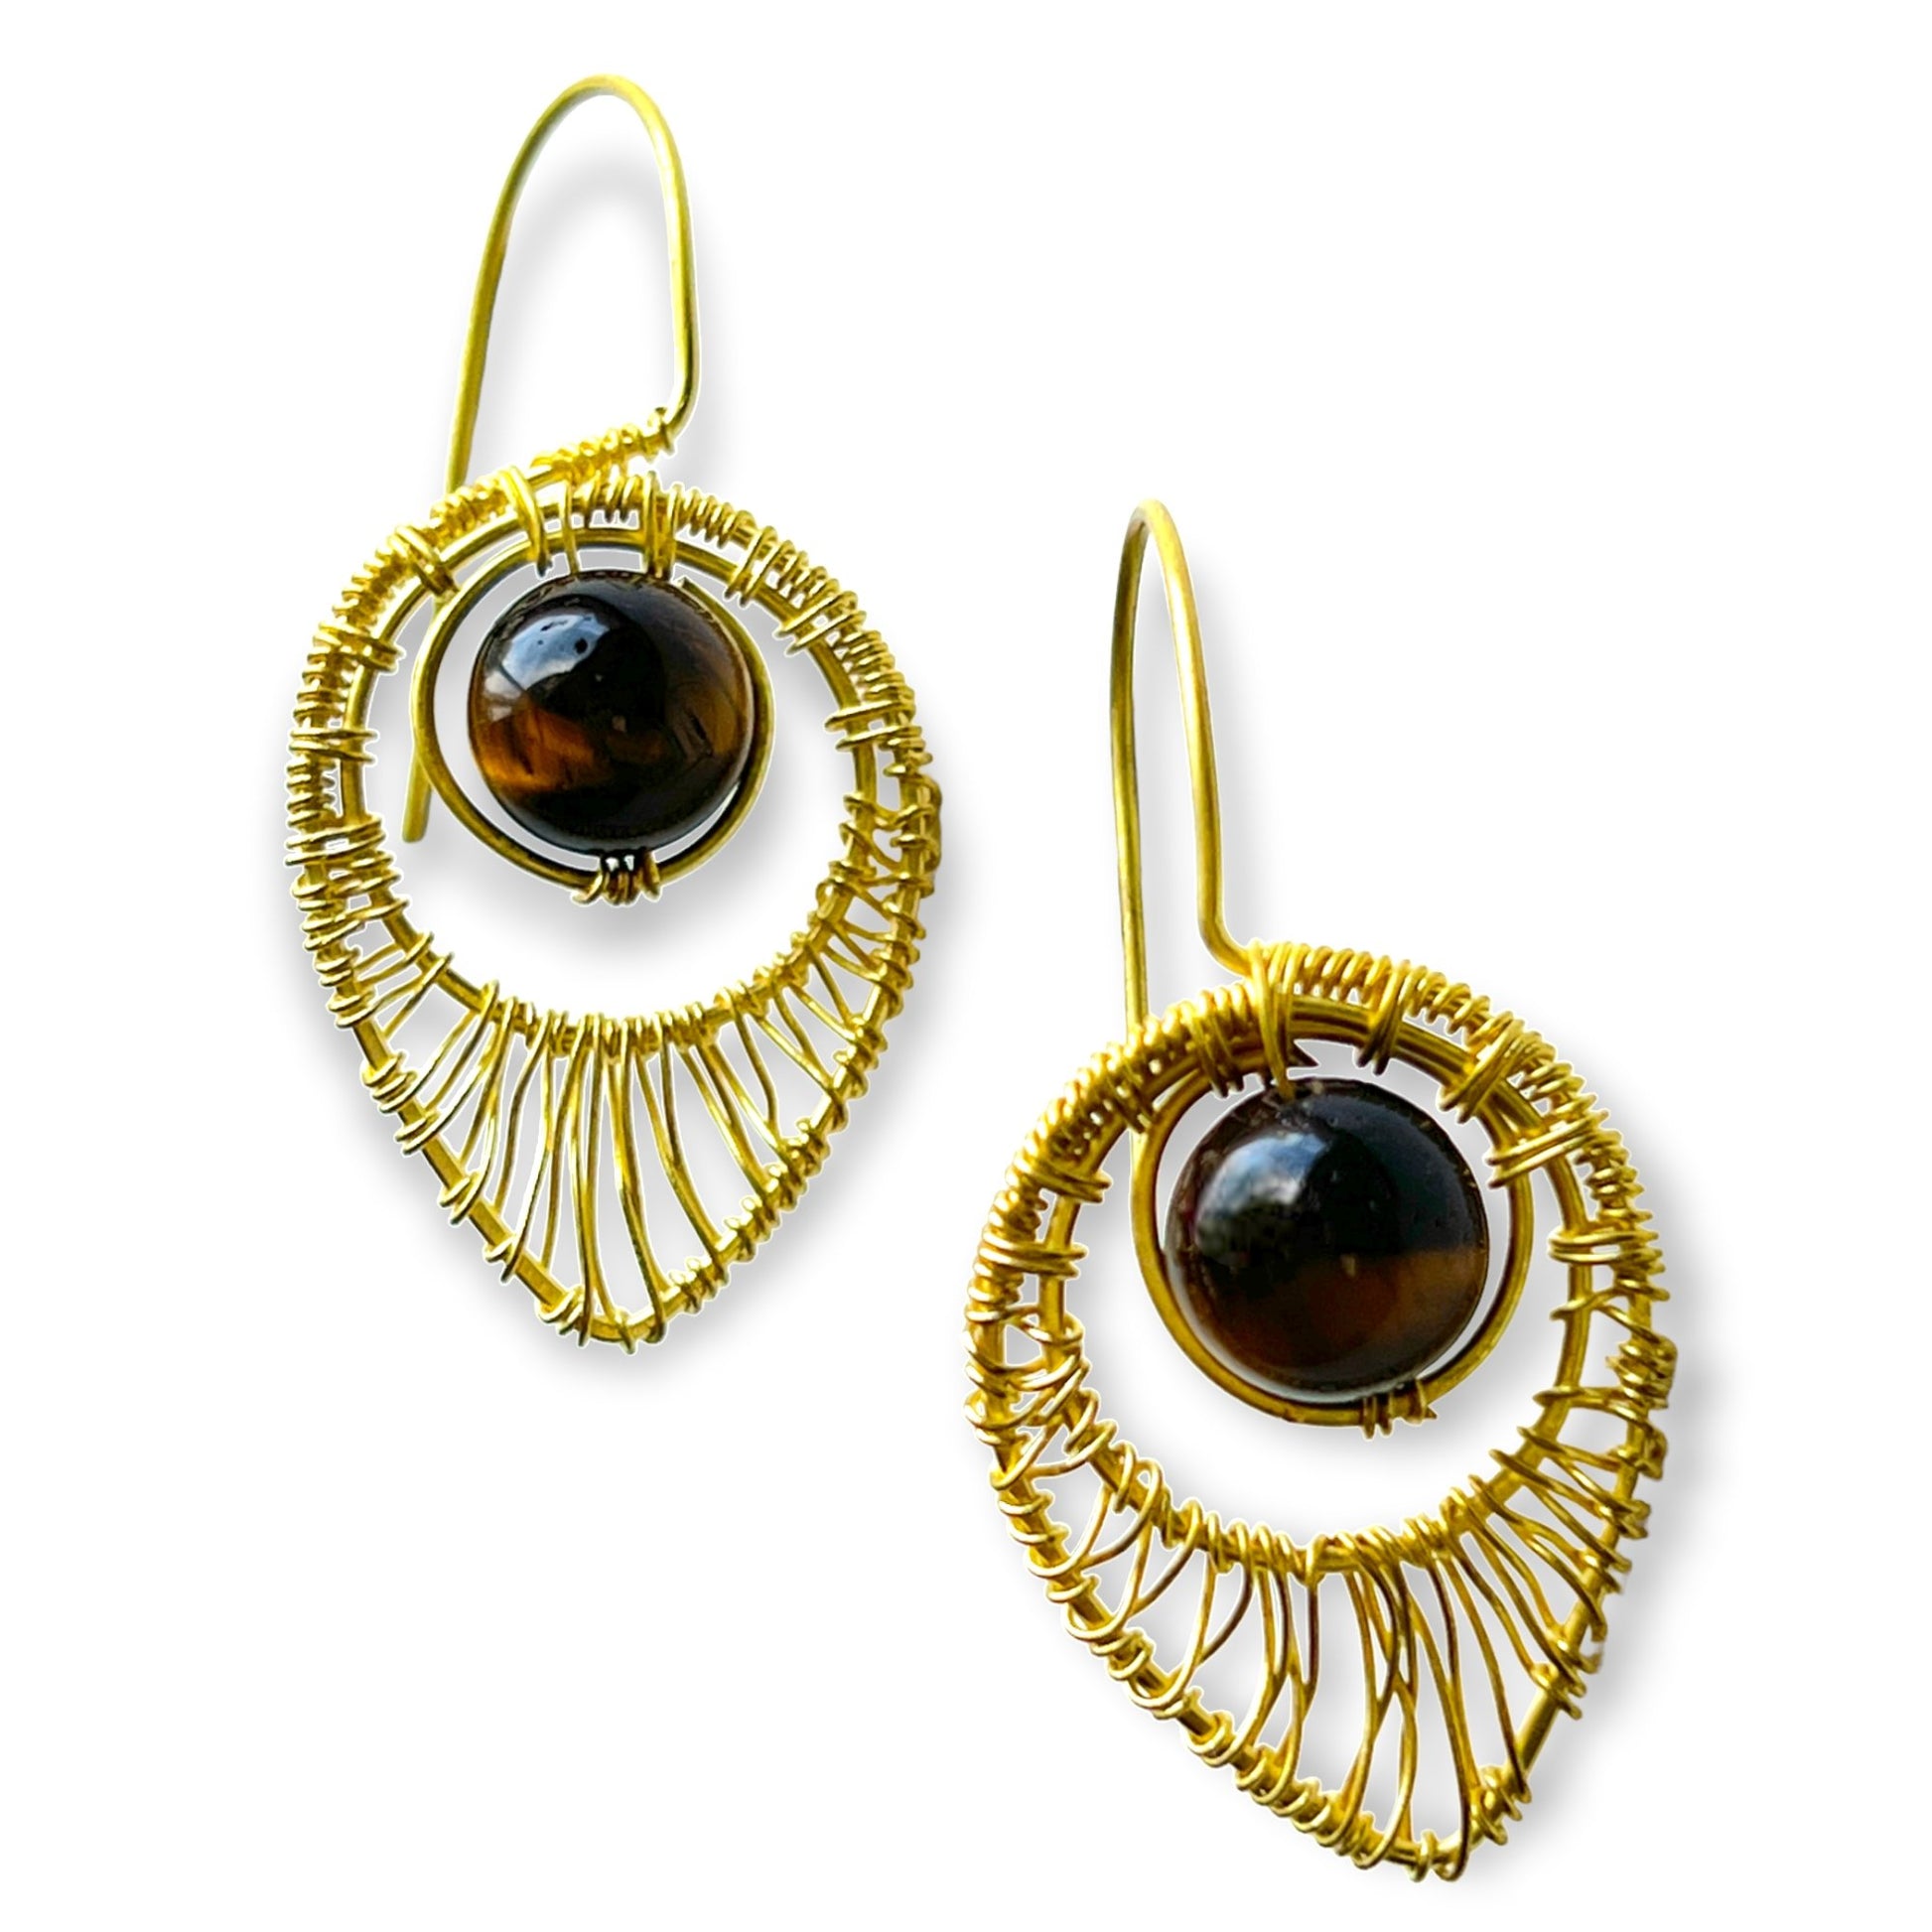 Tear shaped gemstone woven drop earrings - Sundara Joon